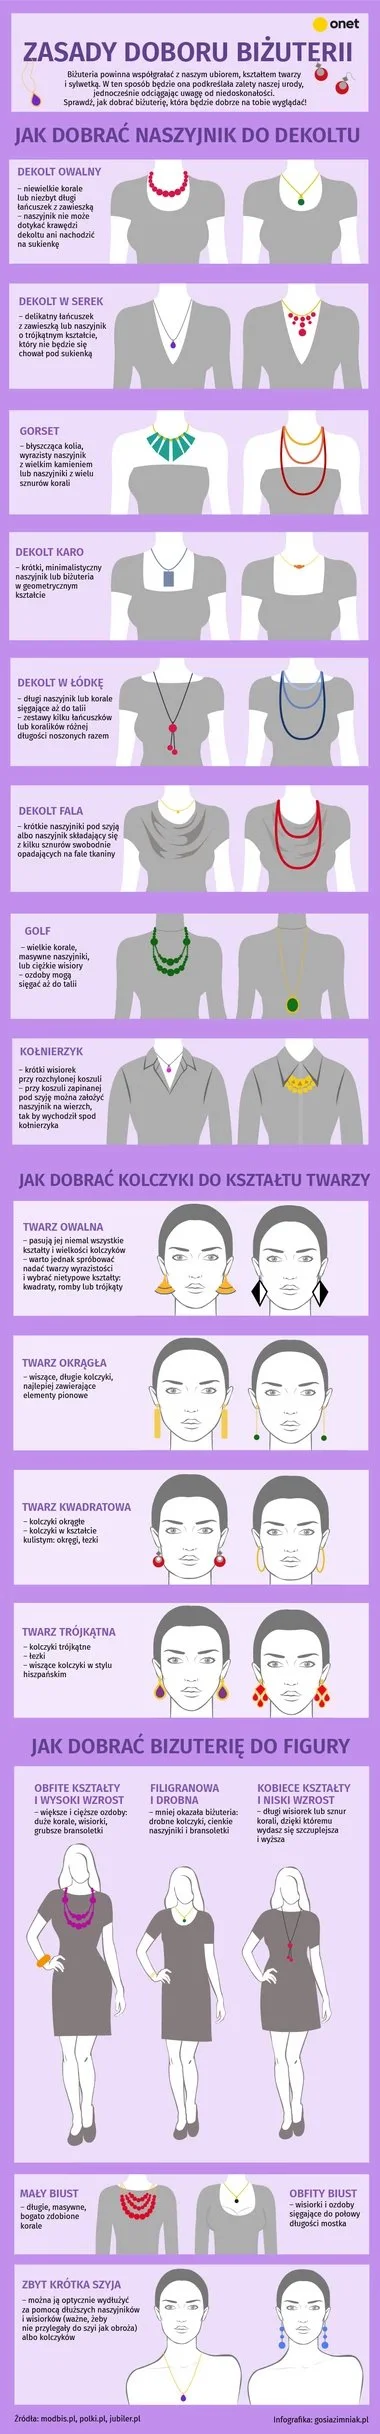 Badmadafakaa - #moda #styl #bizuteria #ubierajsiezwykopem #infografika #ciekawostki